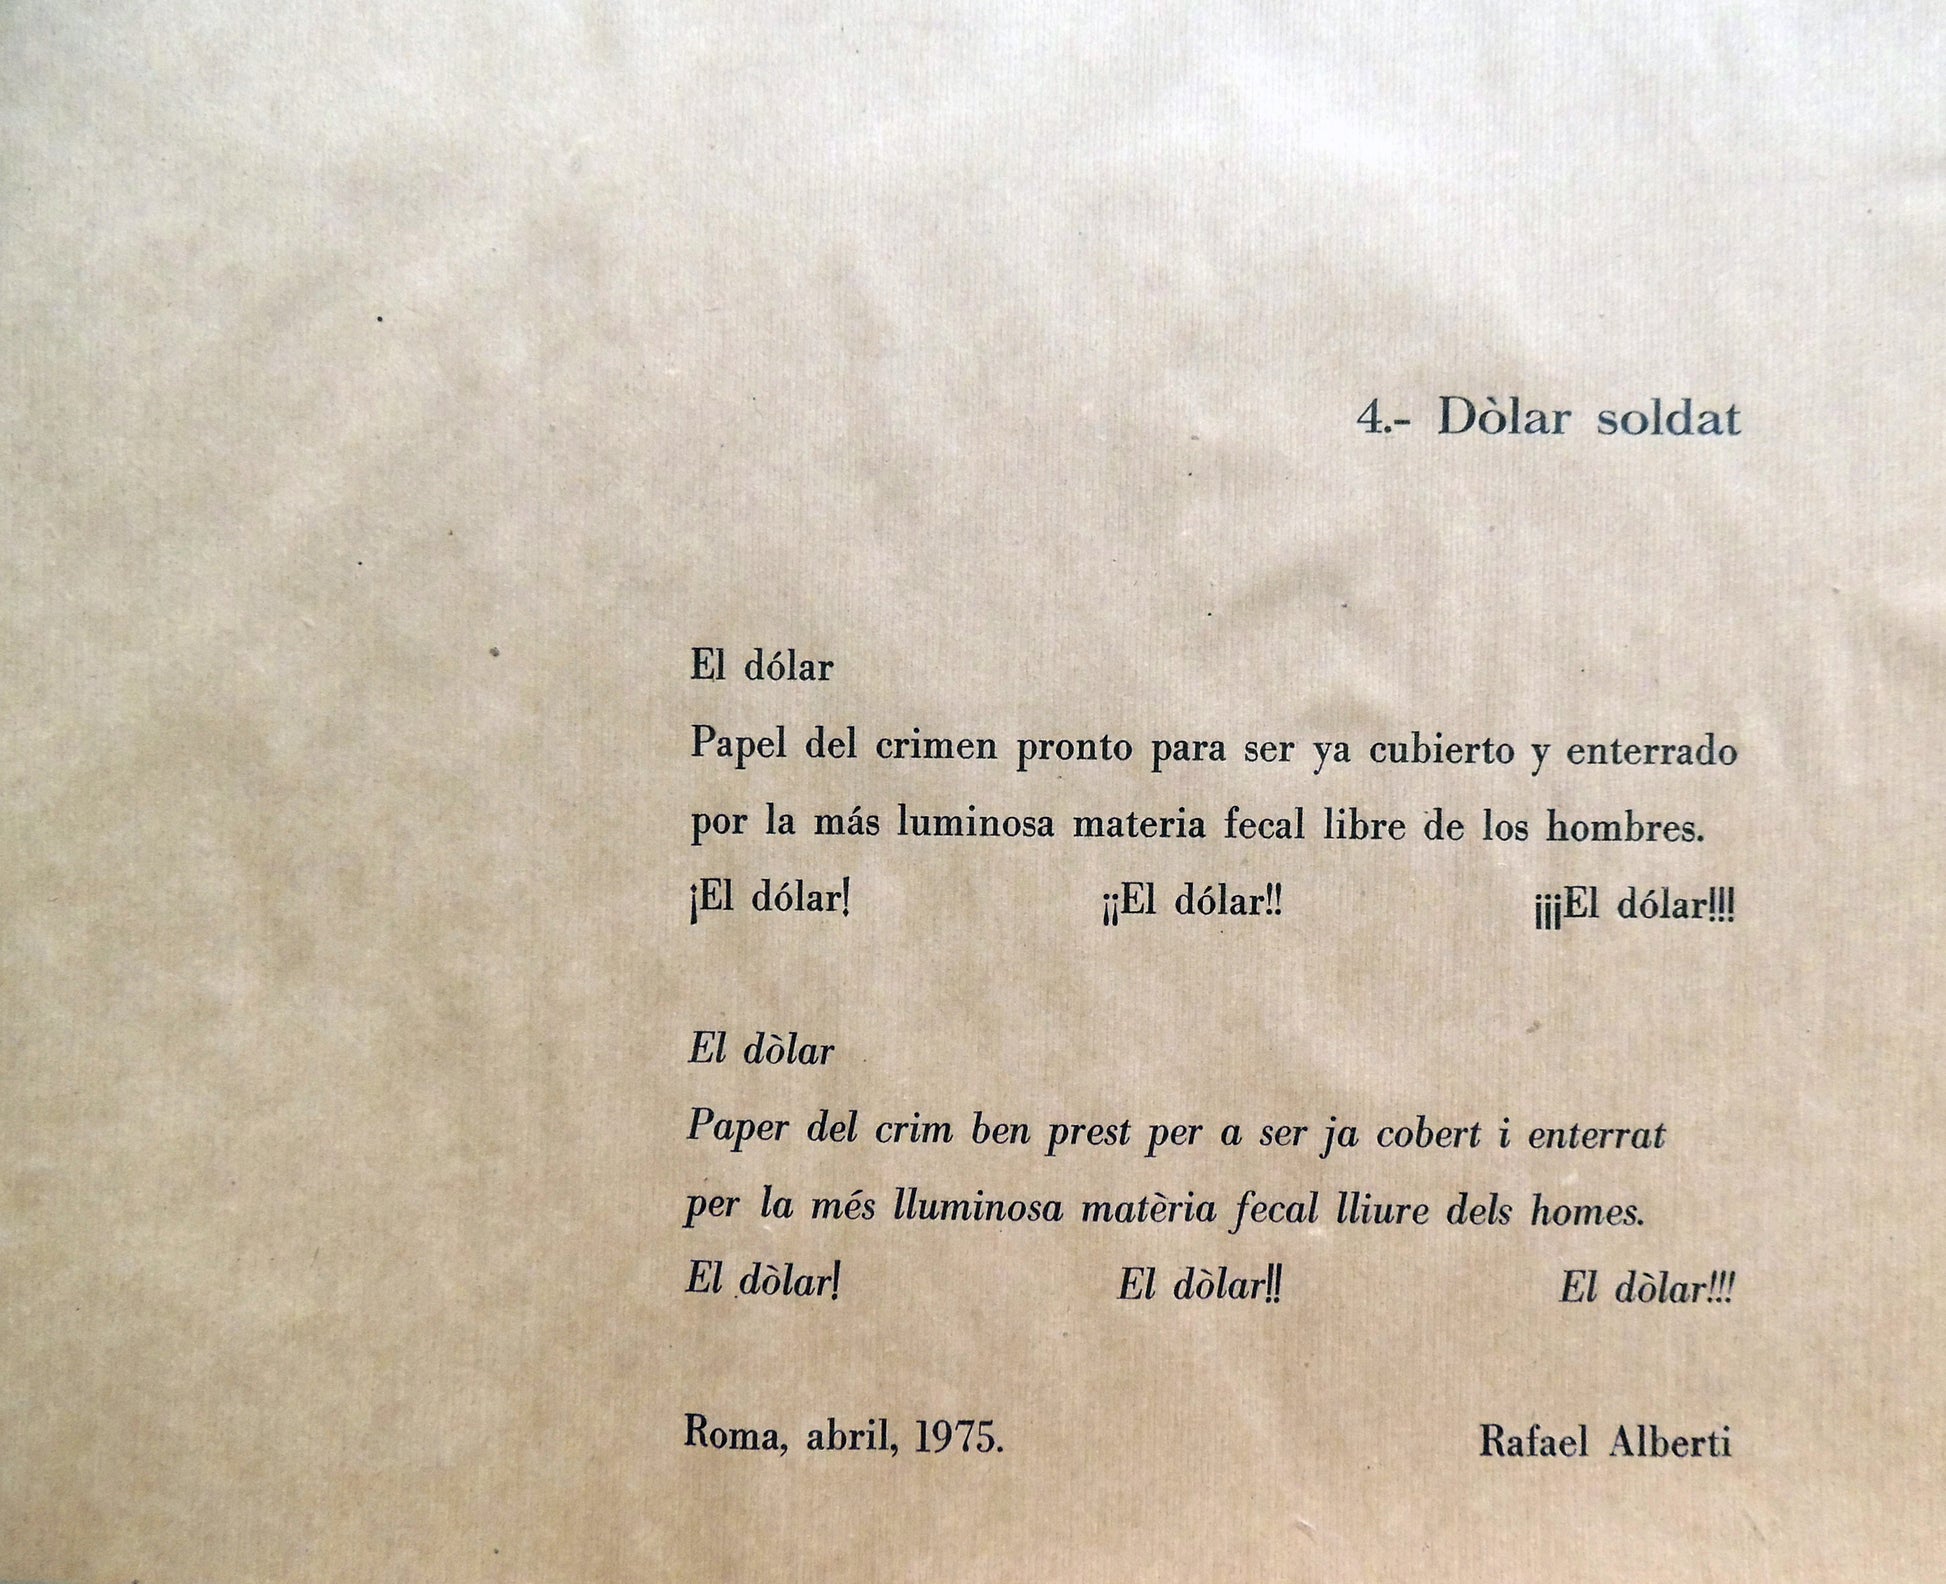 Serigrafía de edición limitada arte contemporáneo Antoni Miró Serie Dólar poema Rafael Alberti Gaudifond